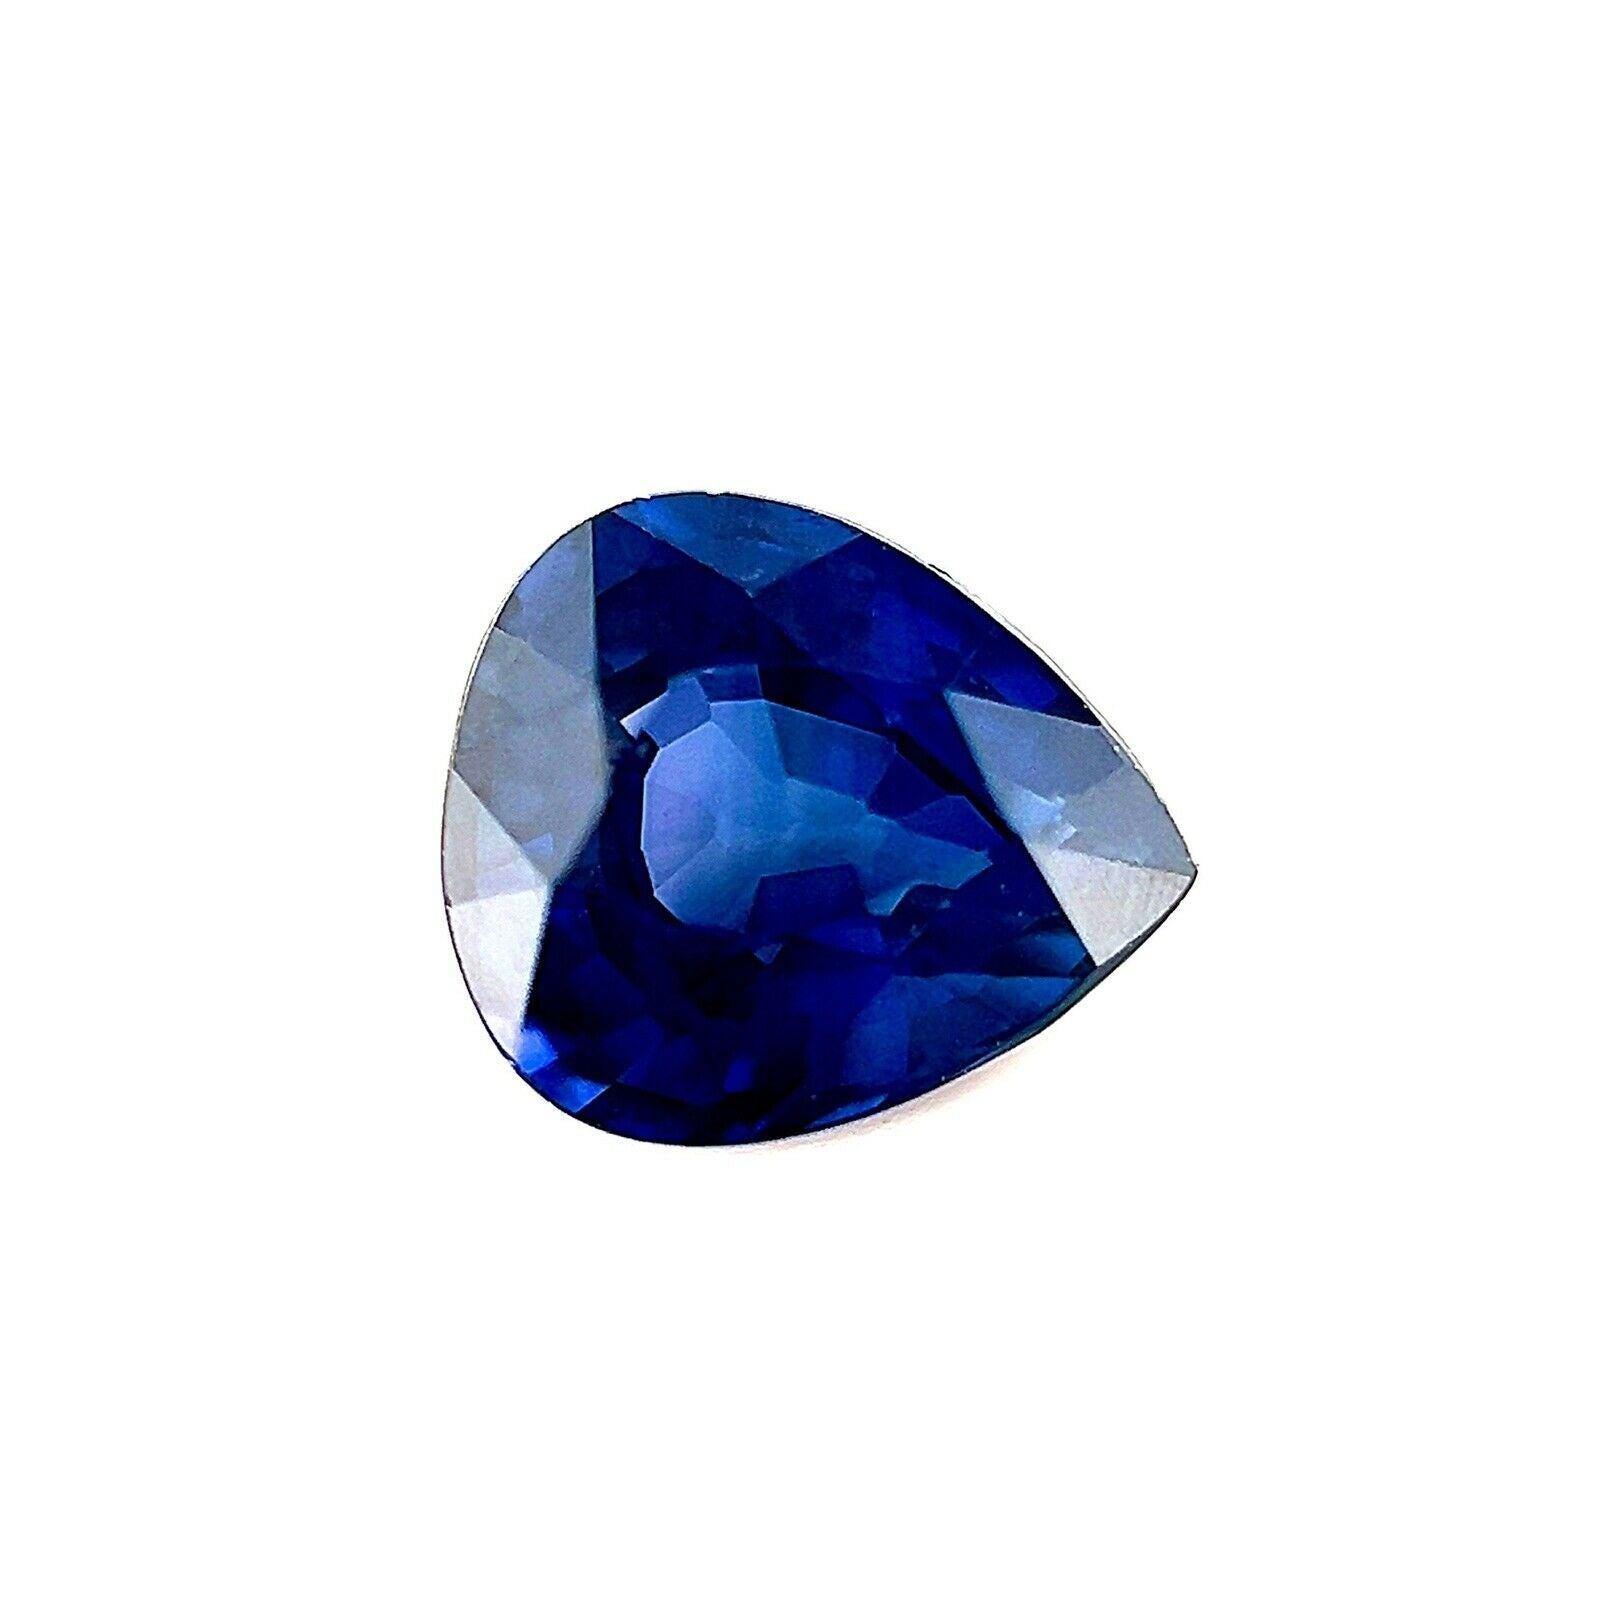 Saphir bleu profond taille poire de 1,22 carat, pierre précieuse rare et de taille libre